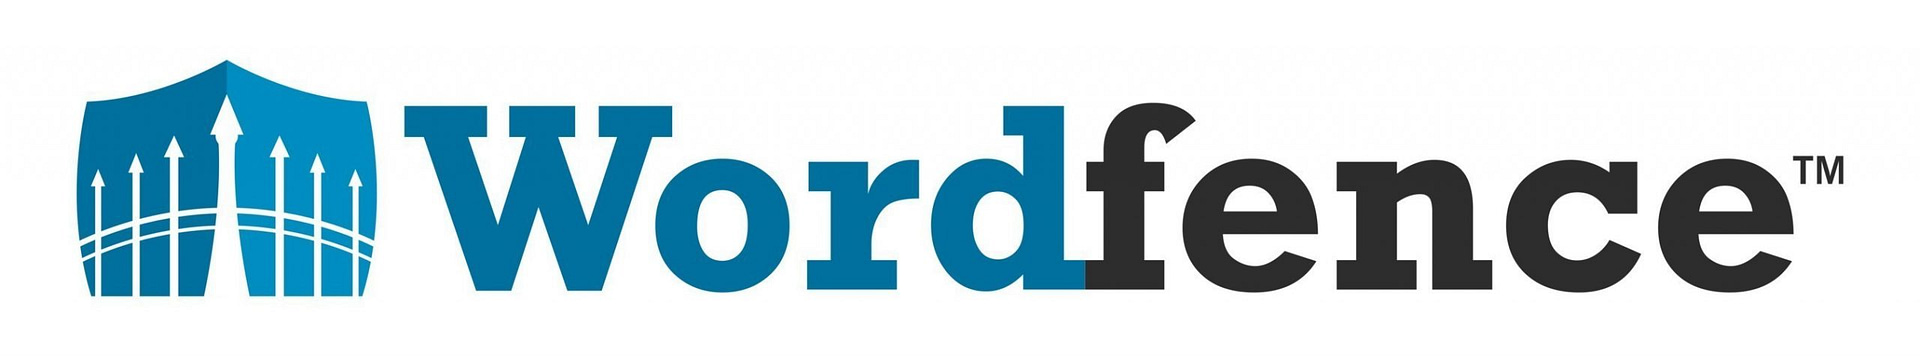 wordfence logo scaled